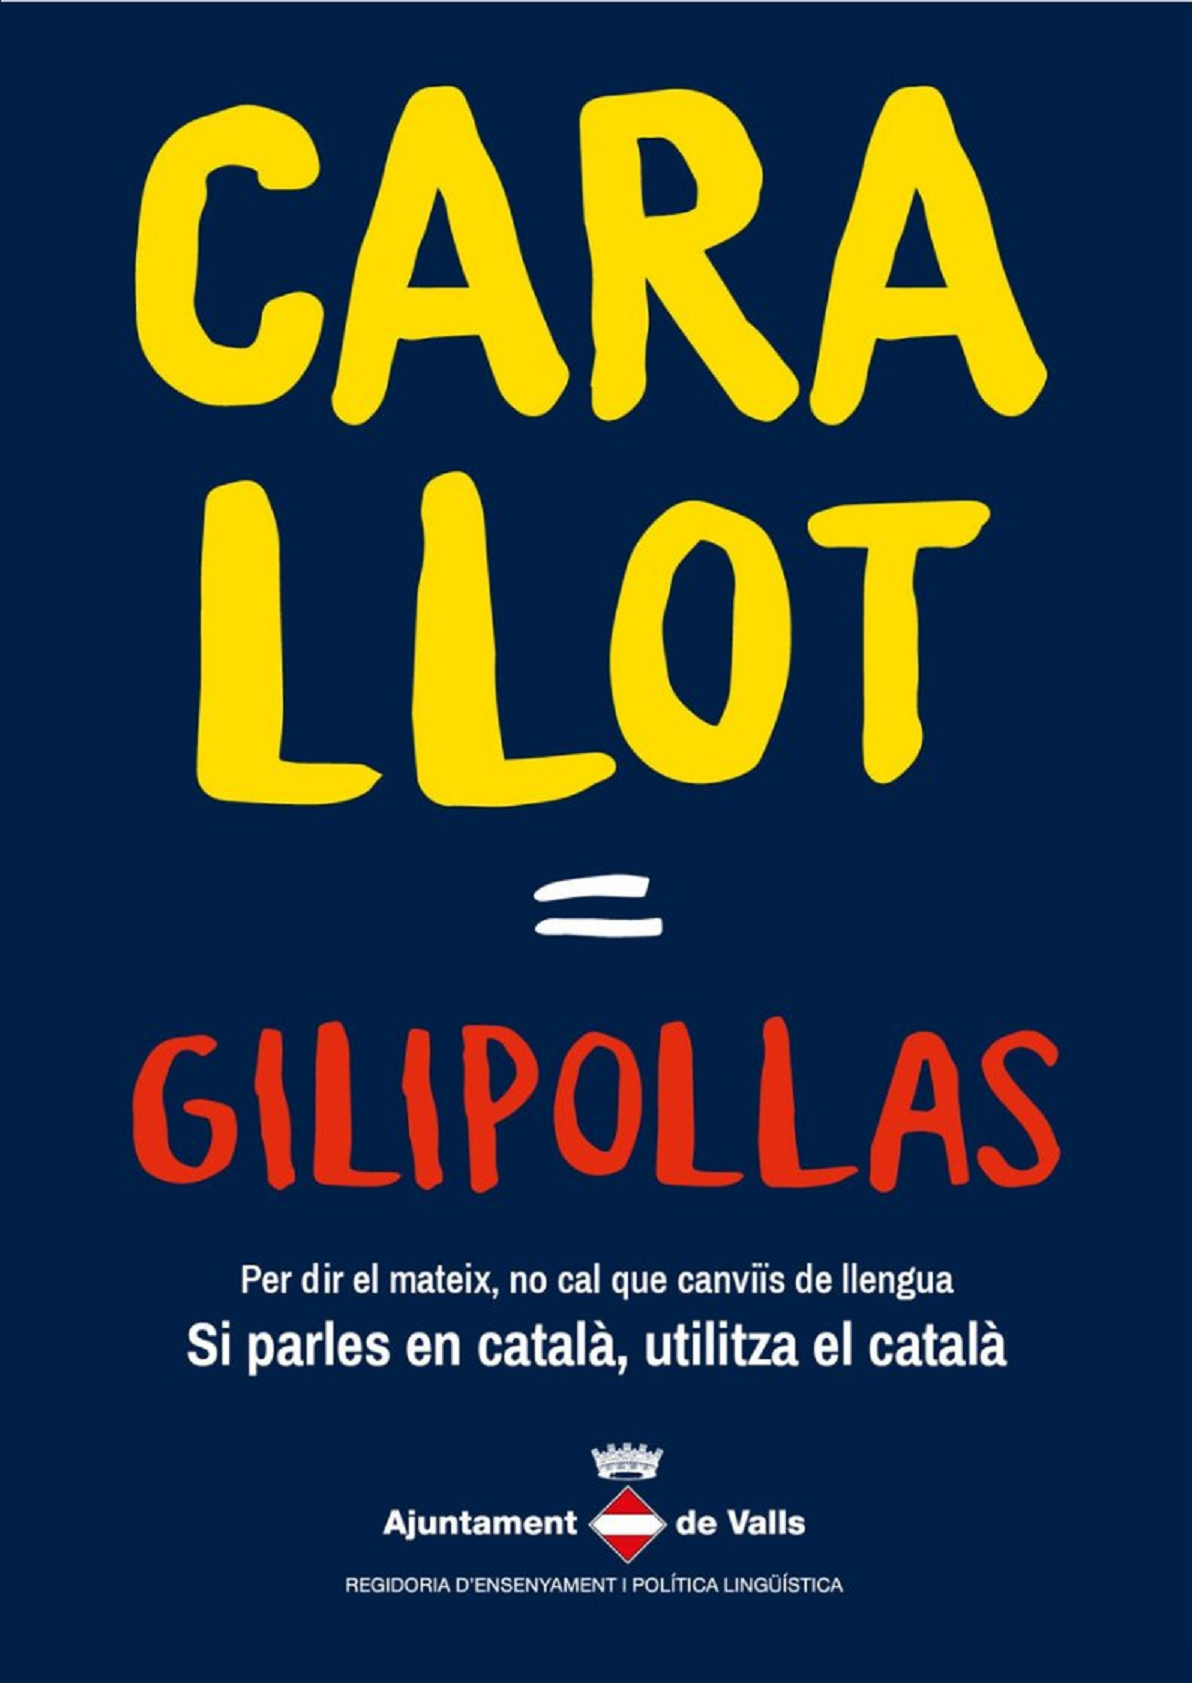 La contundent campanya de Valls a favor del català